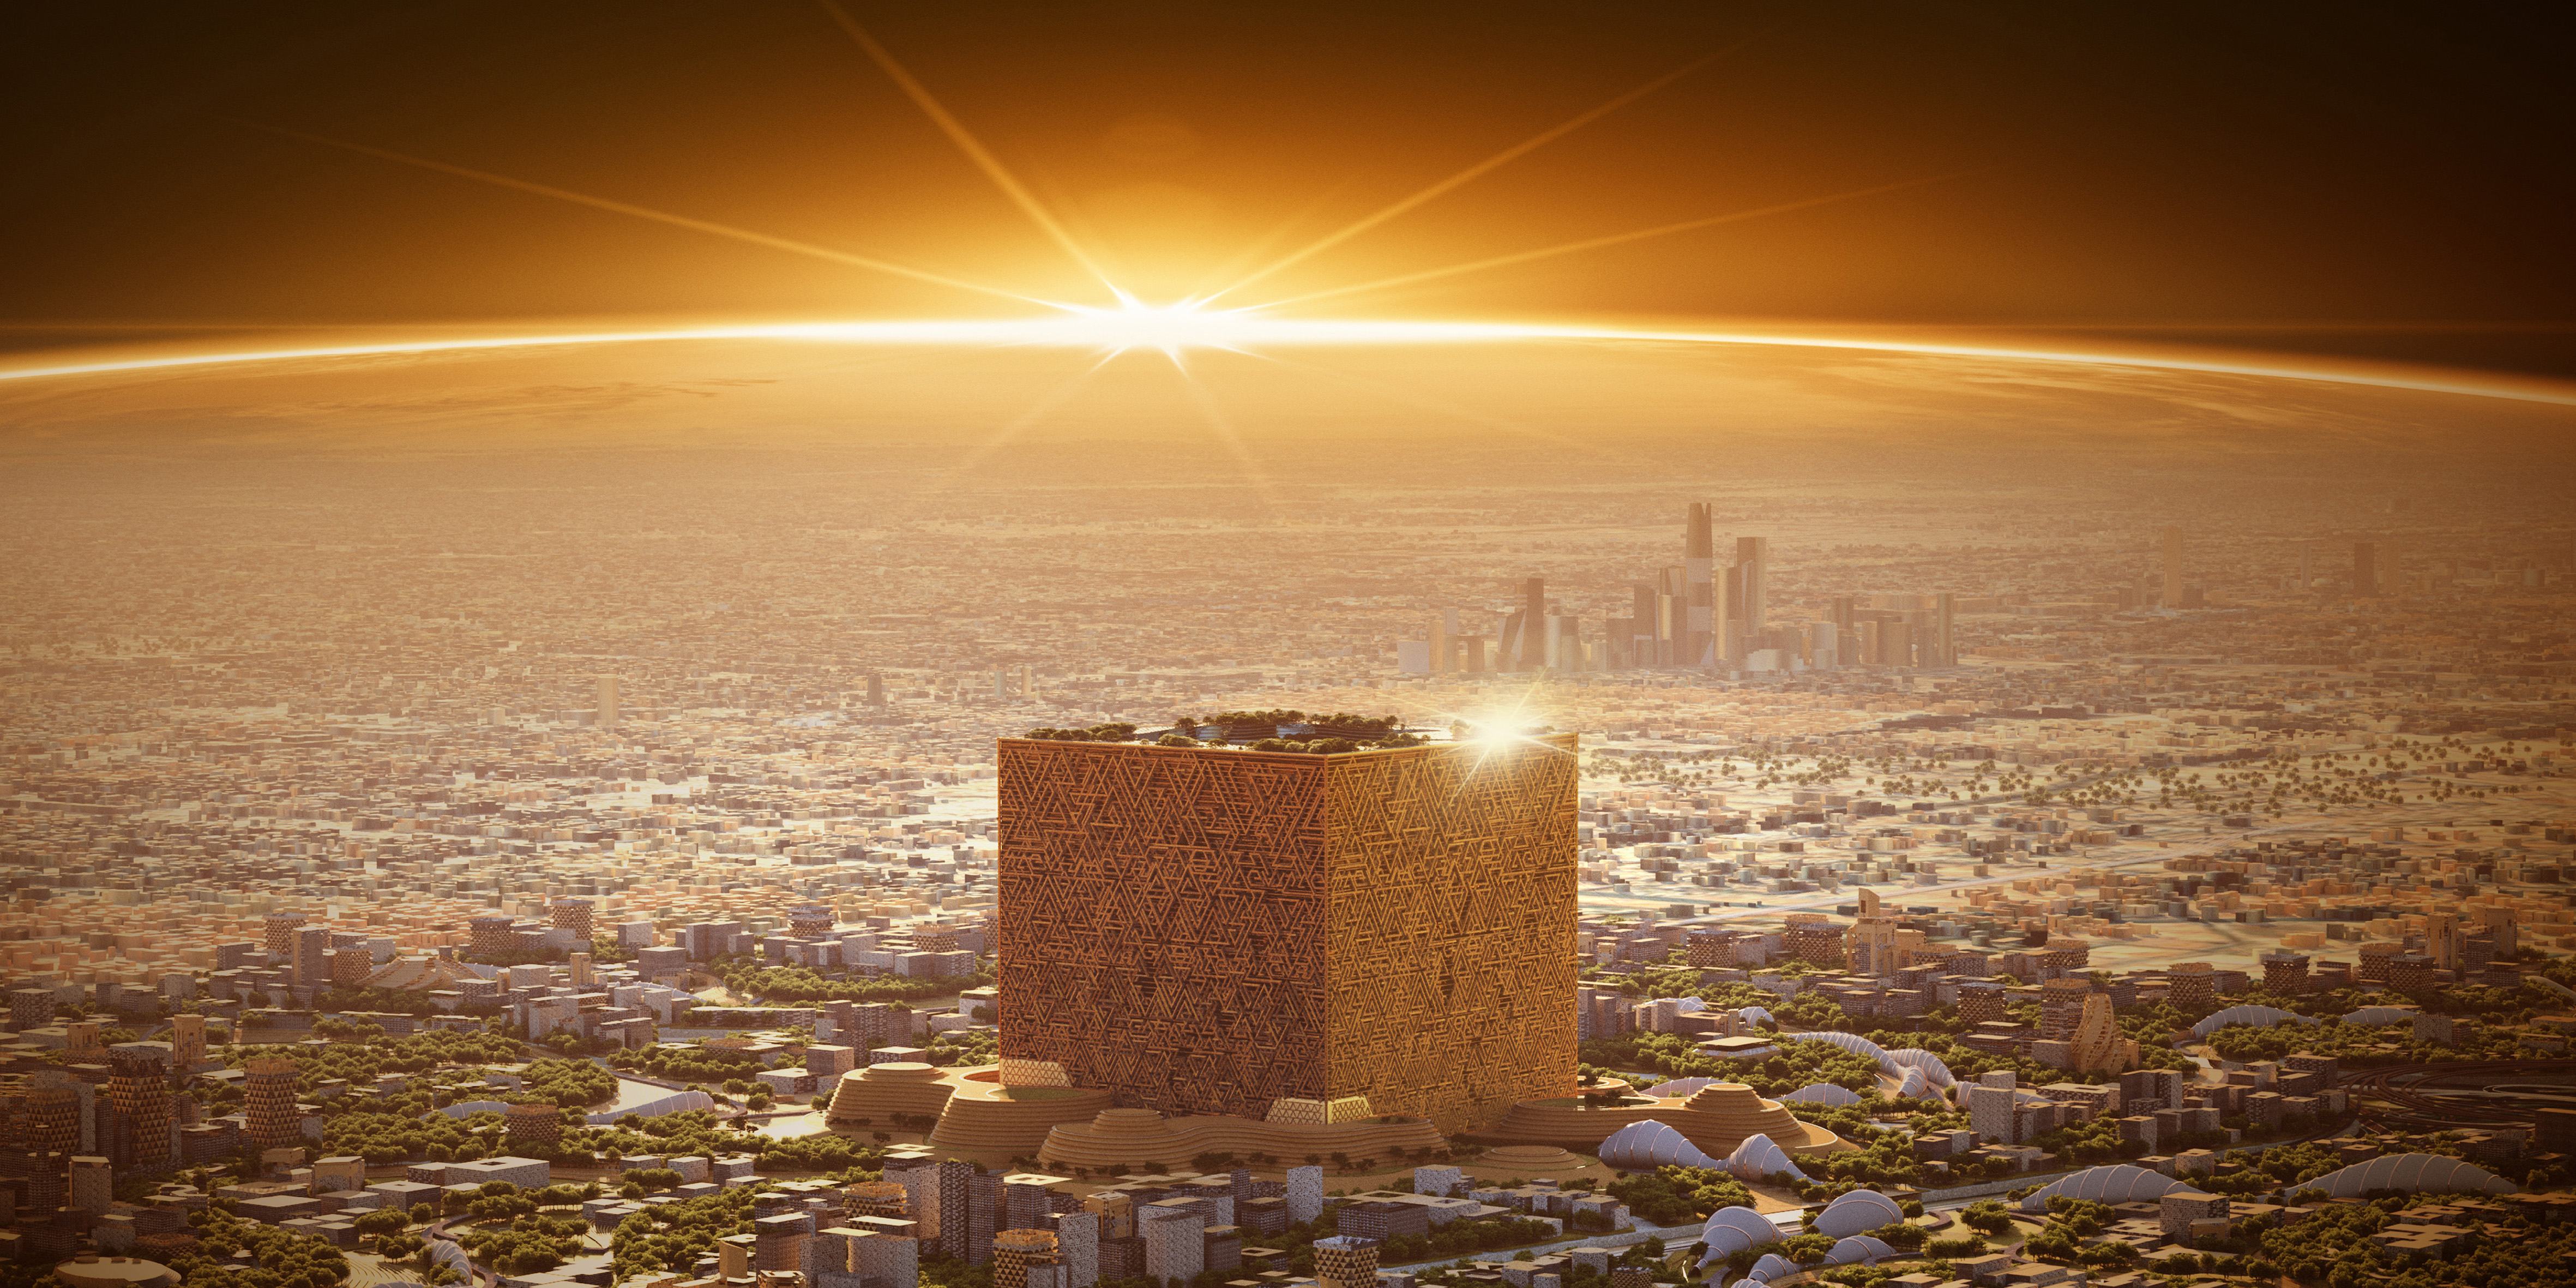 Une image du projet Le Mukaab visant à construire un immense cube de 400 mètres de haut, dans lequel pourraient se loger vingt gratte-ciels comme l'Empire State Buildings. Il serait le cœur de la ville nouvelle, baptisée New Murabba qui viendrait double la population de Riyad. © Fond d'investissement public de l'Arabie Saoudite